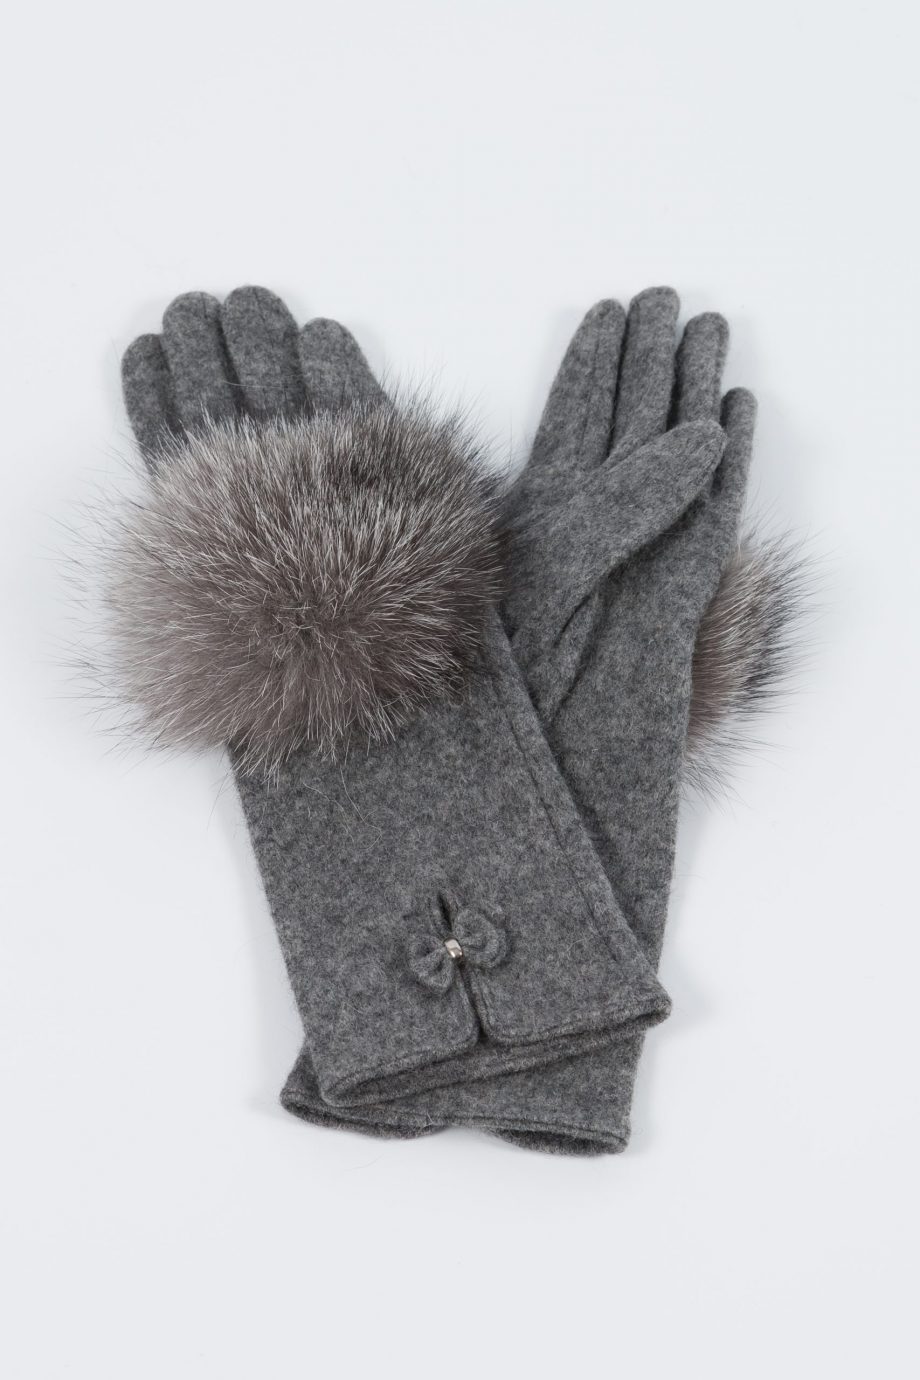 Woolen gloves with fox fur decoration made by SILTA MADA fur studio in Vilnius